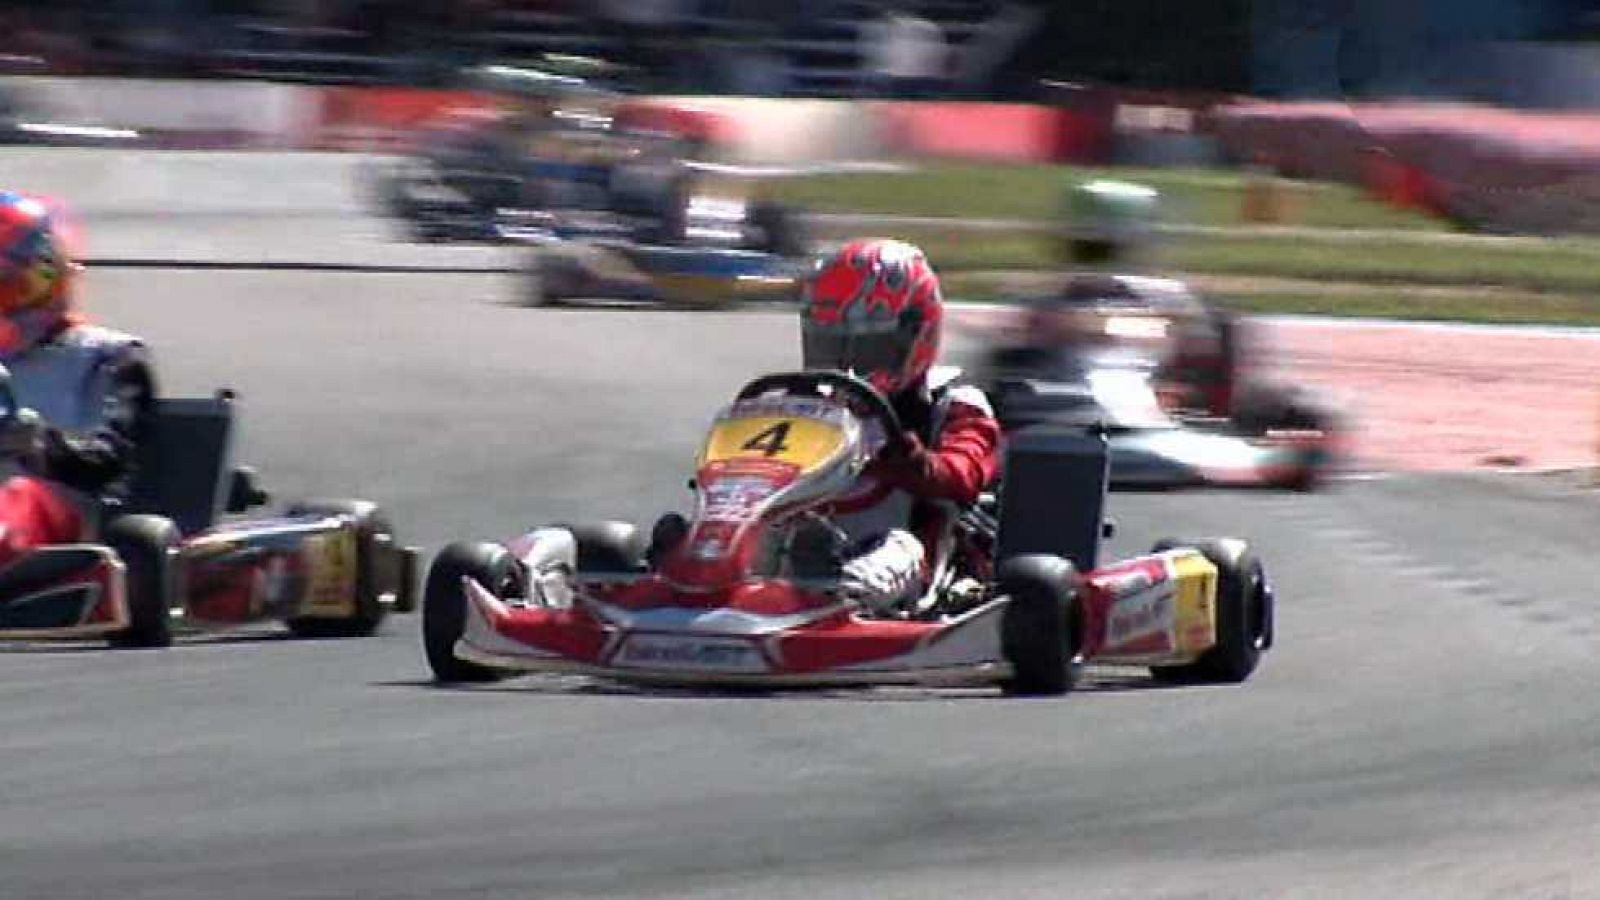 Automovilismo - Karting: Campeonato de España. 1ª Prueba Recas